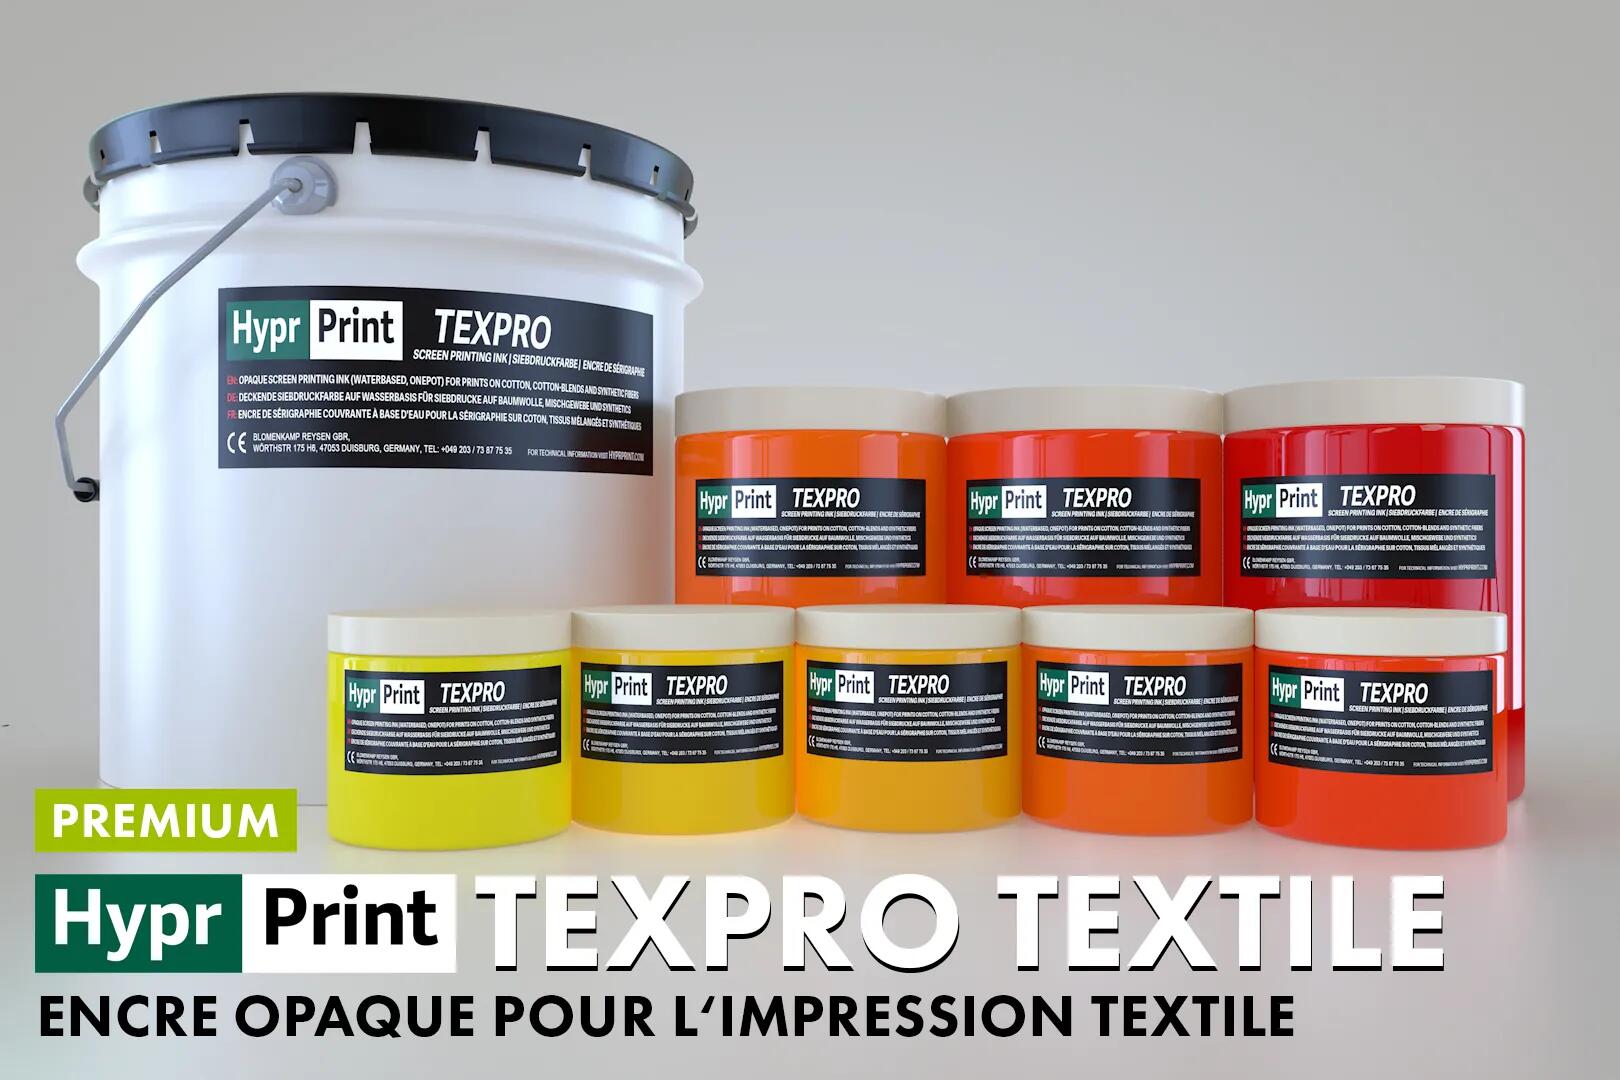 TEPXRO Encre opaque pour l‘impression textile serigraphie